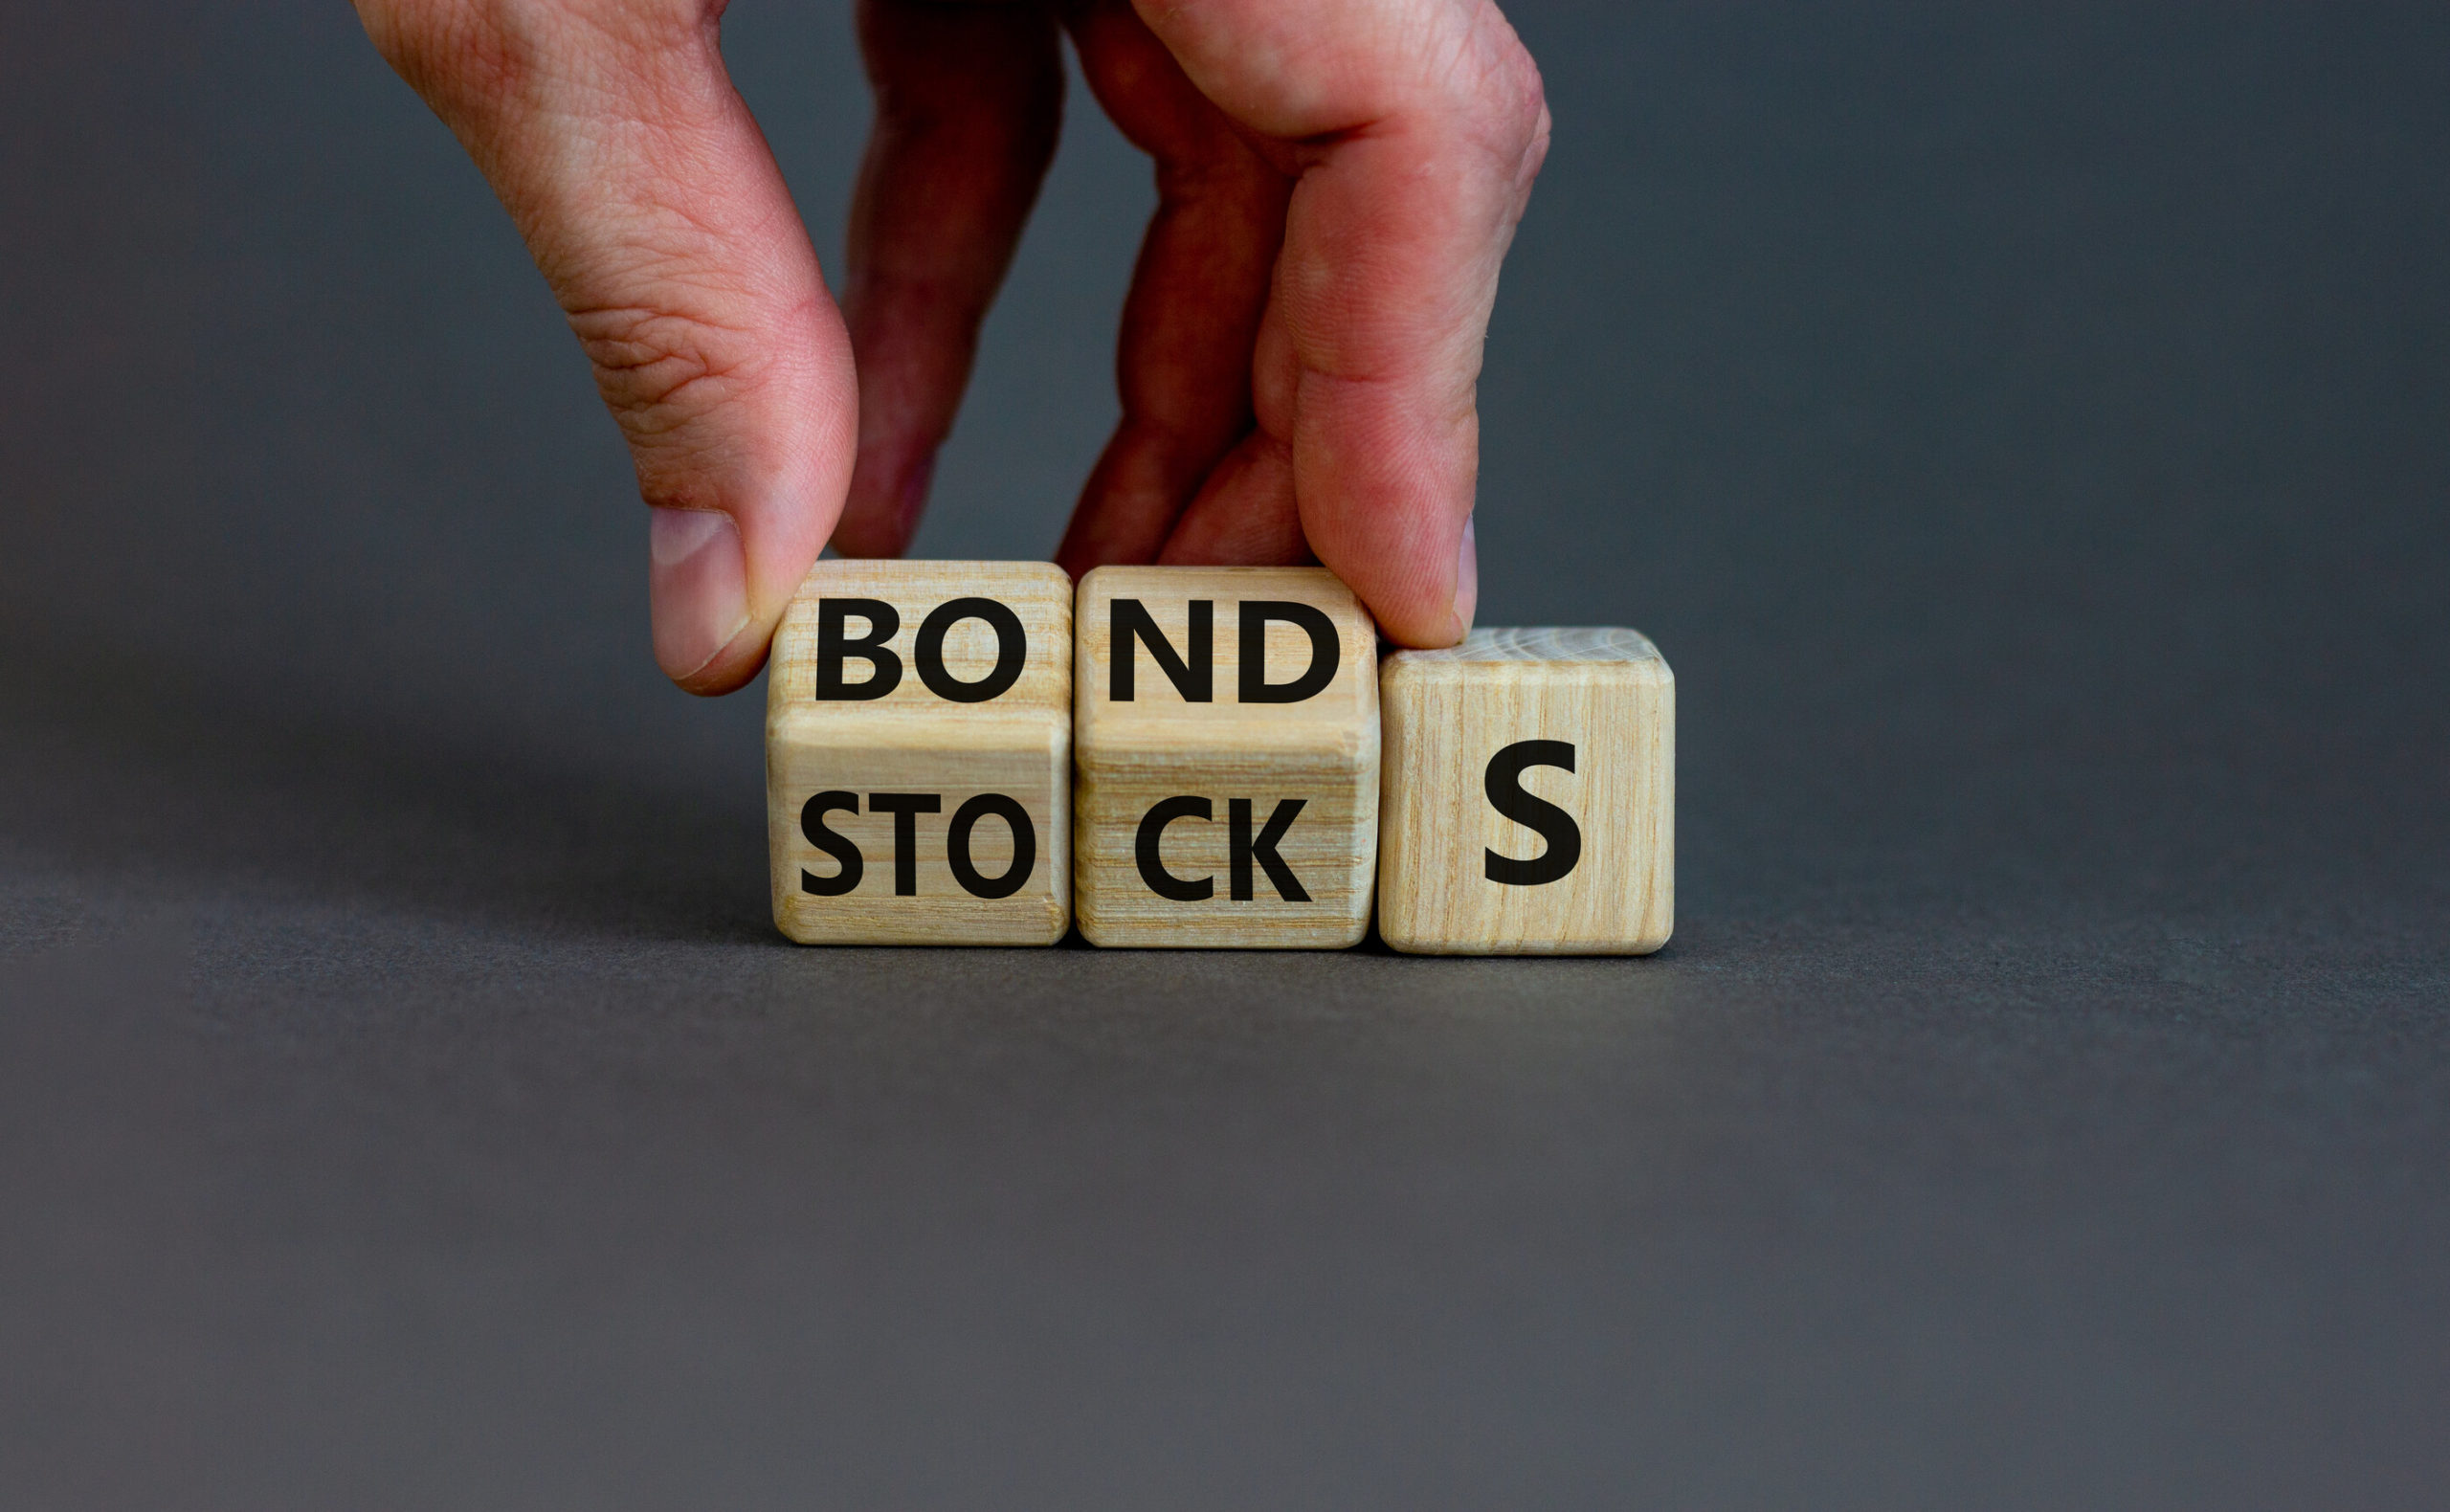 Stocks vs. bonds